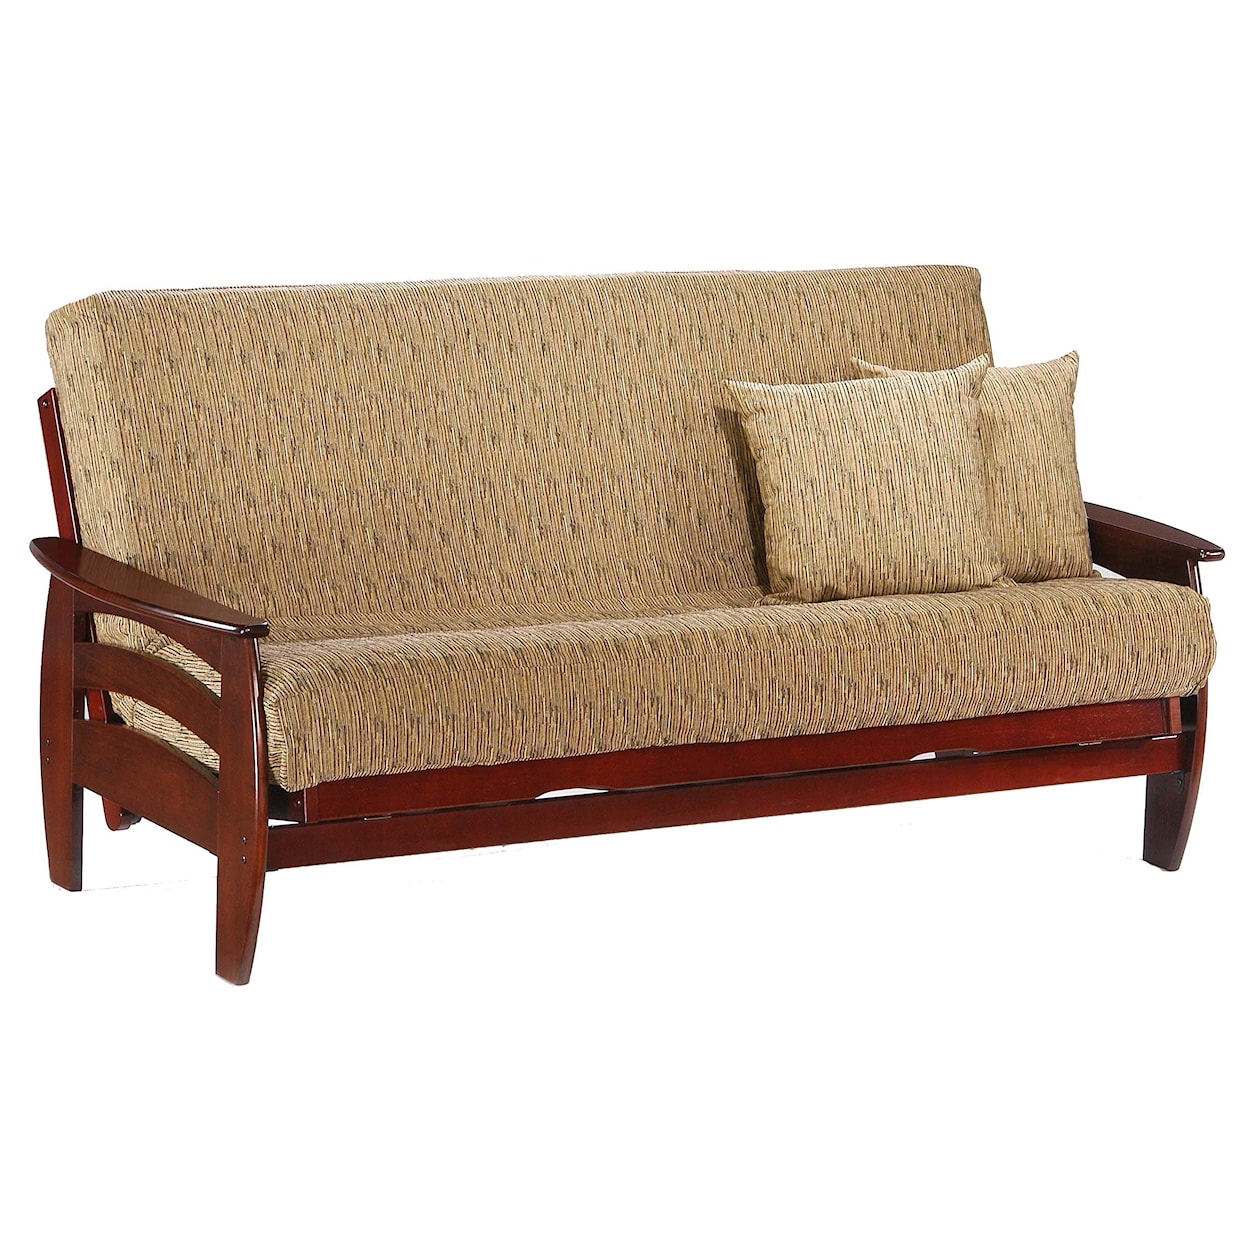 Night & Day Furniture Corona Rosewood Full Size Futon